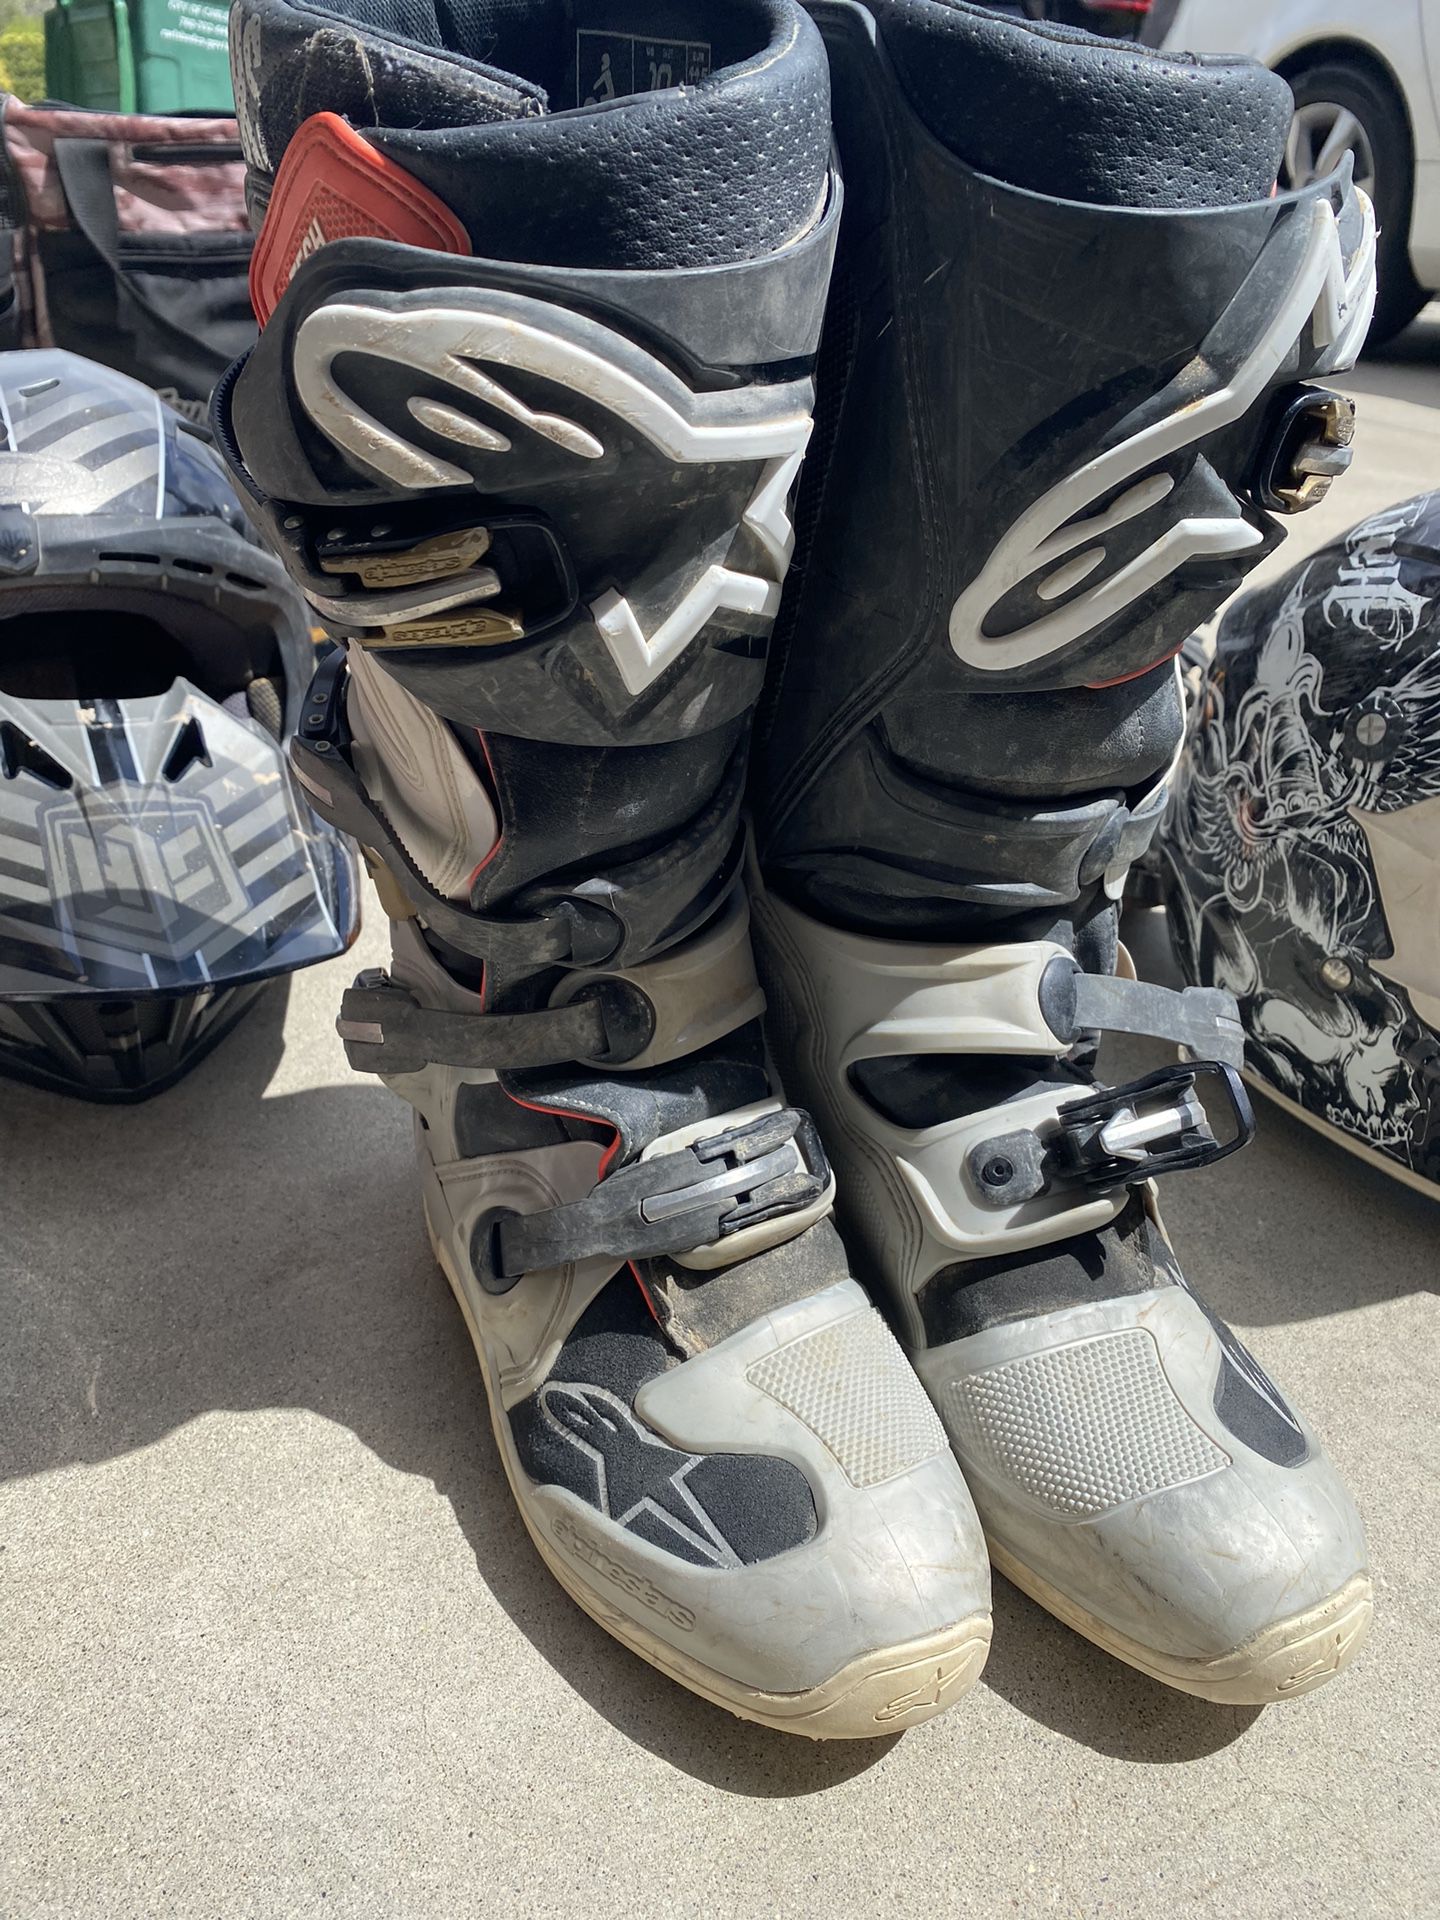 Motocross Gear Helmets Gear Bags Cheat Protectors